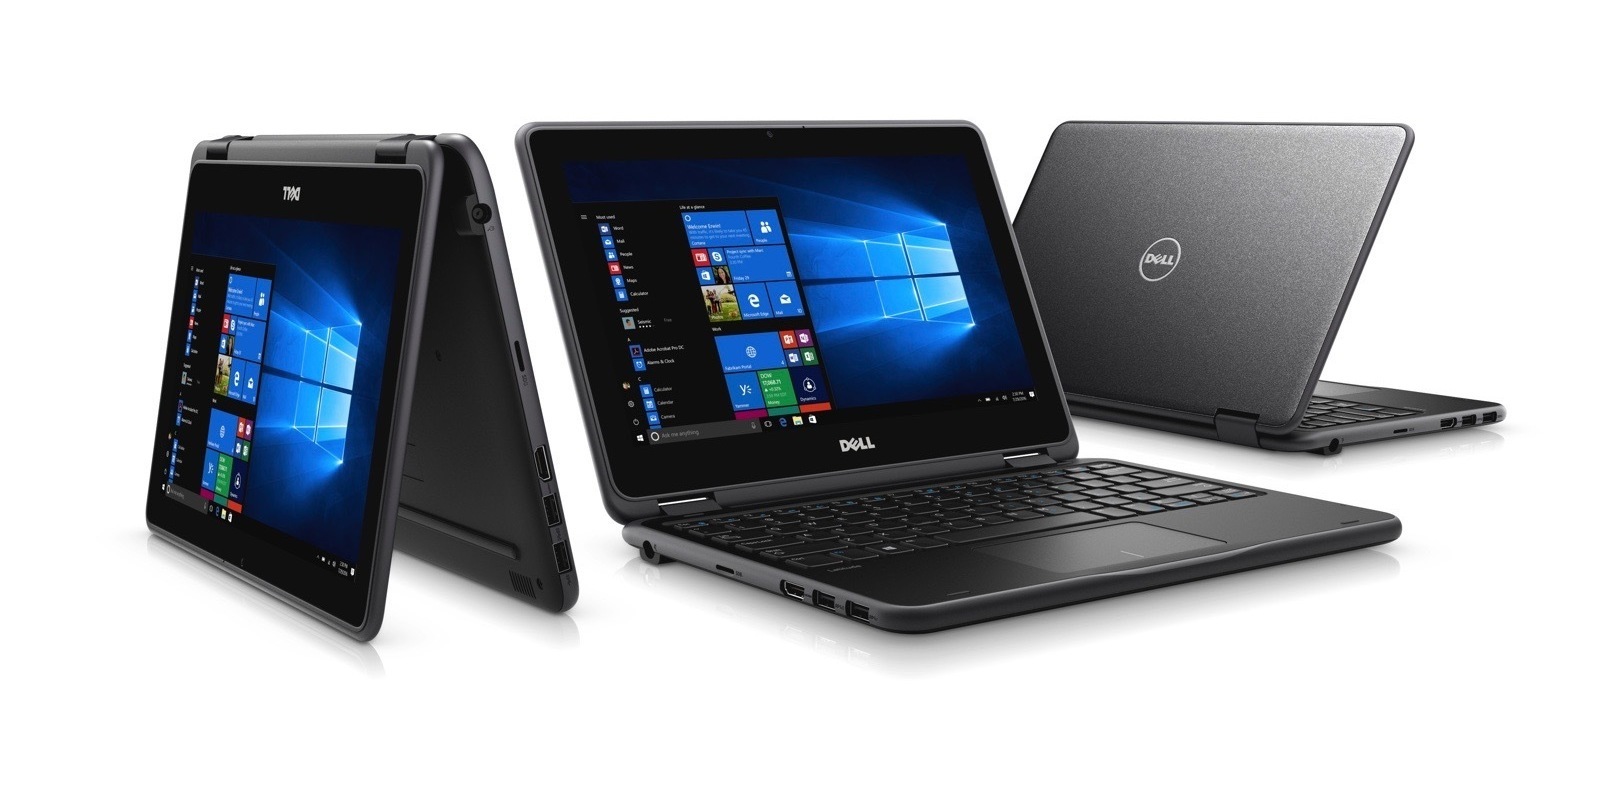 Dell представила два ноутбука для образовательных учреждений: Dell Latitude 11 и Chromebook 11 Convertible